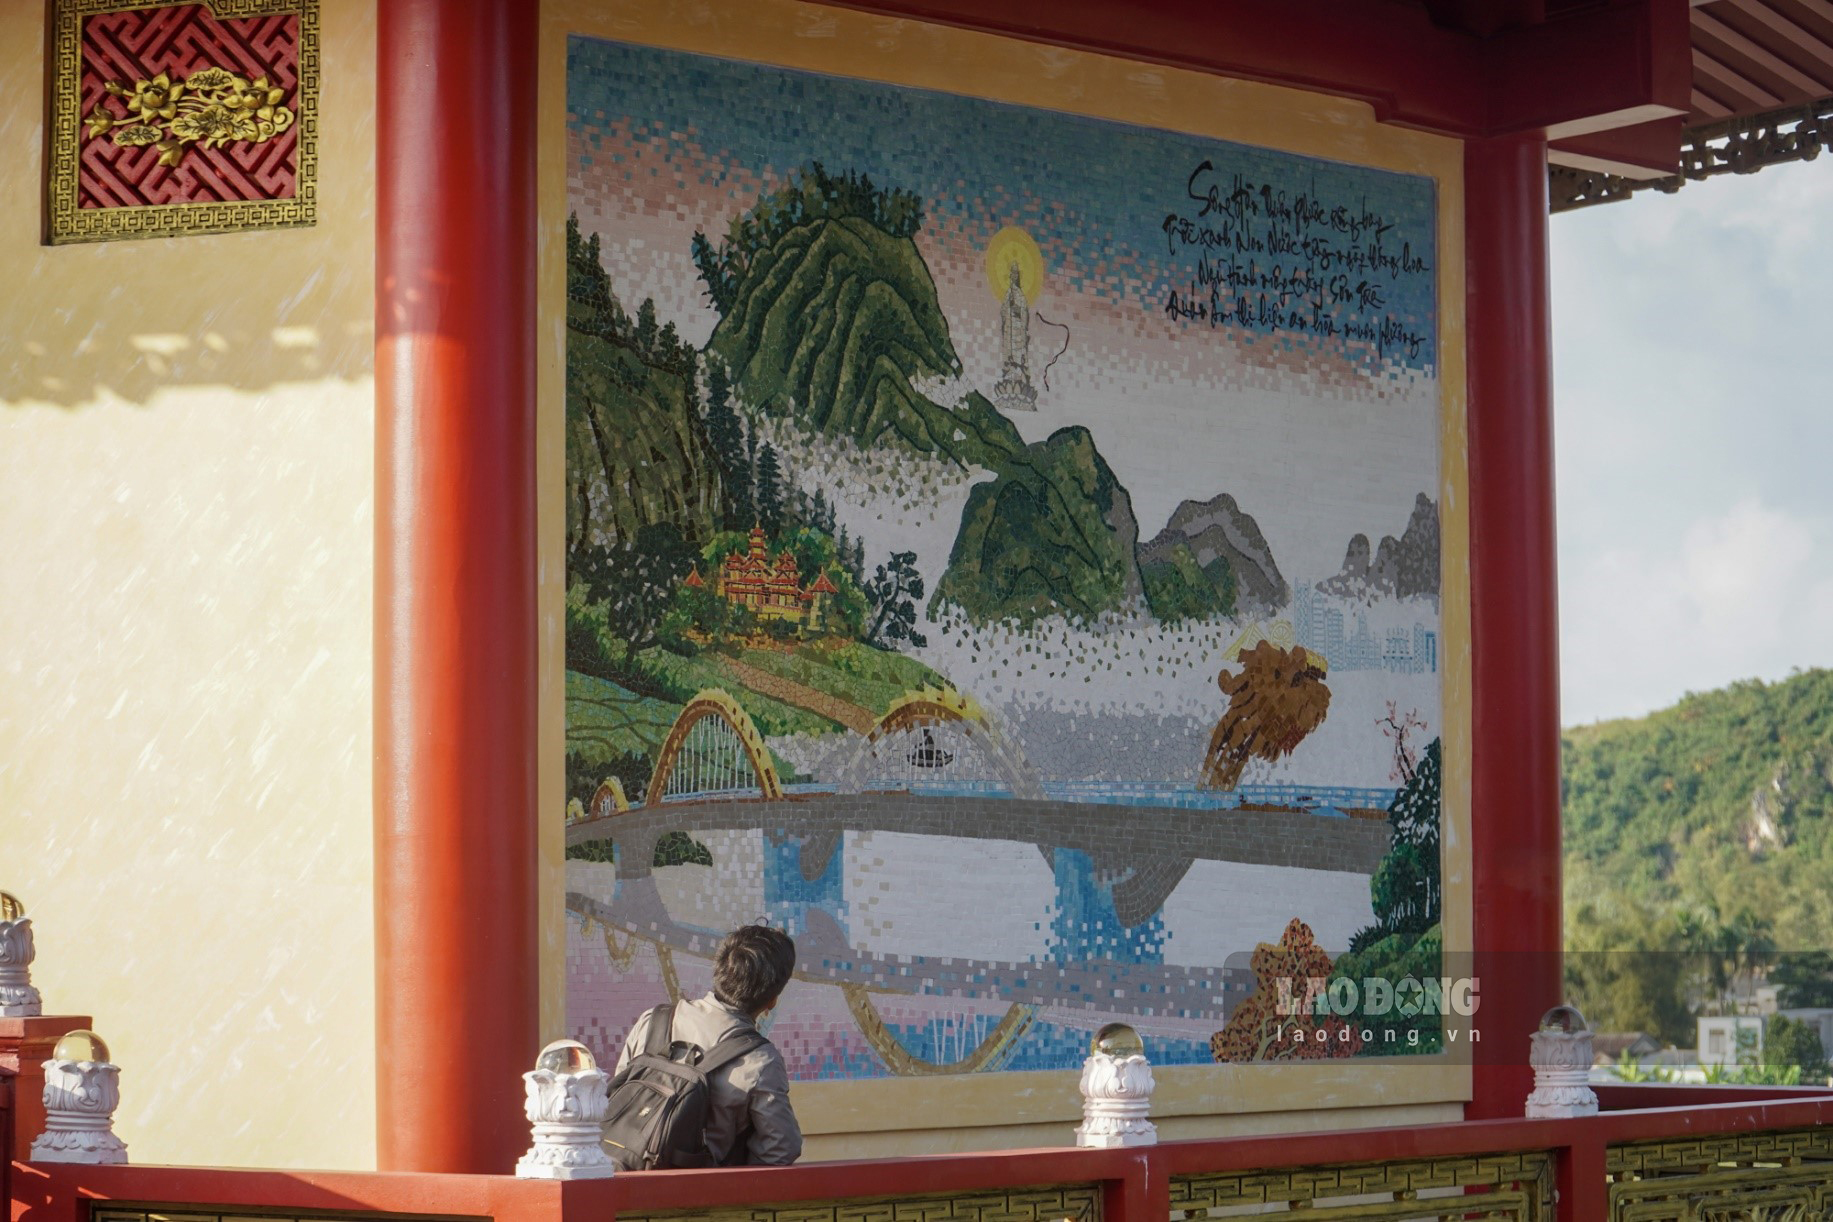 Bức tranh về cầu Rồng tại Đà Nẵng được ghép tỉ mỉ từ nhiều mảnh sứ.